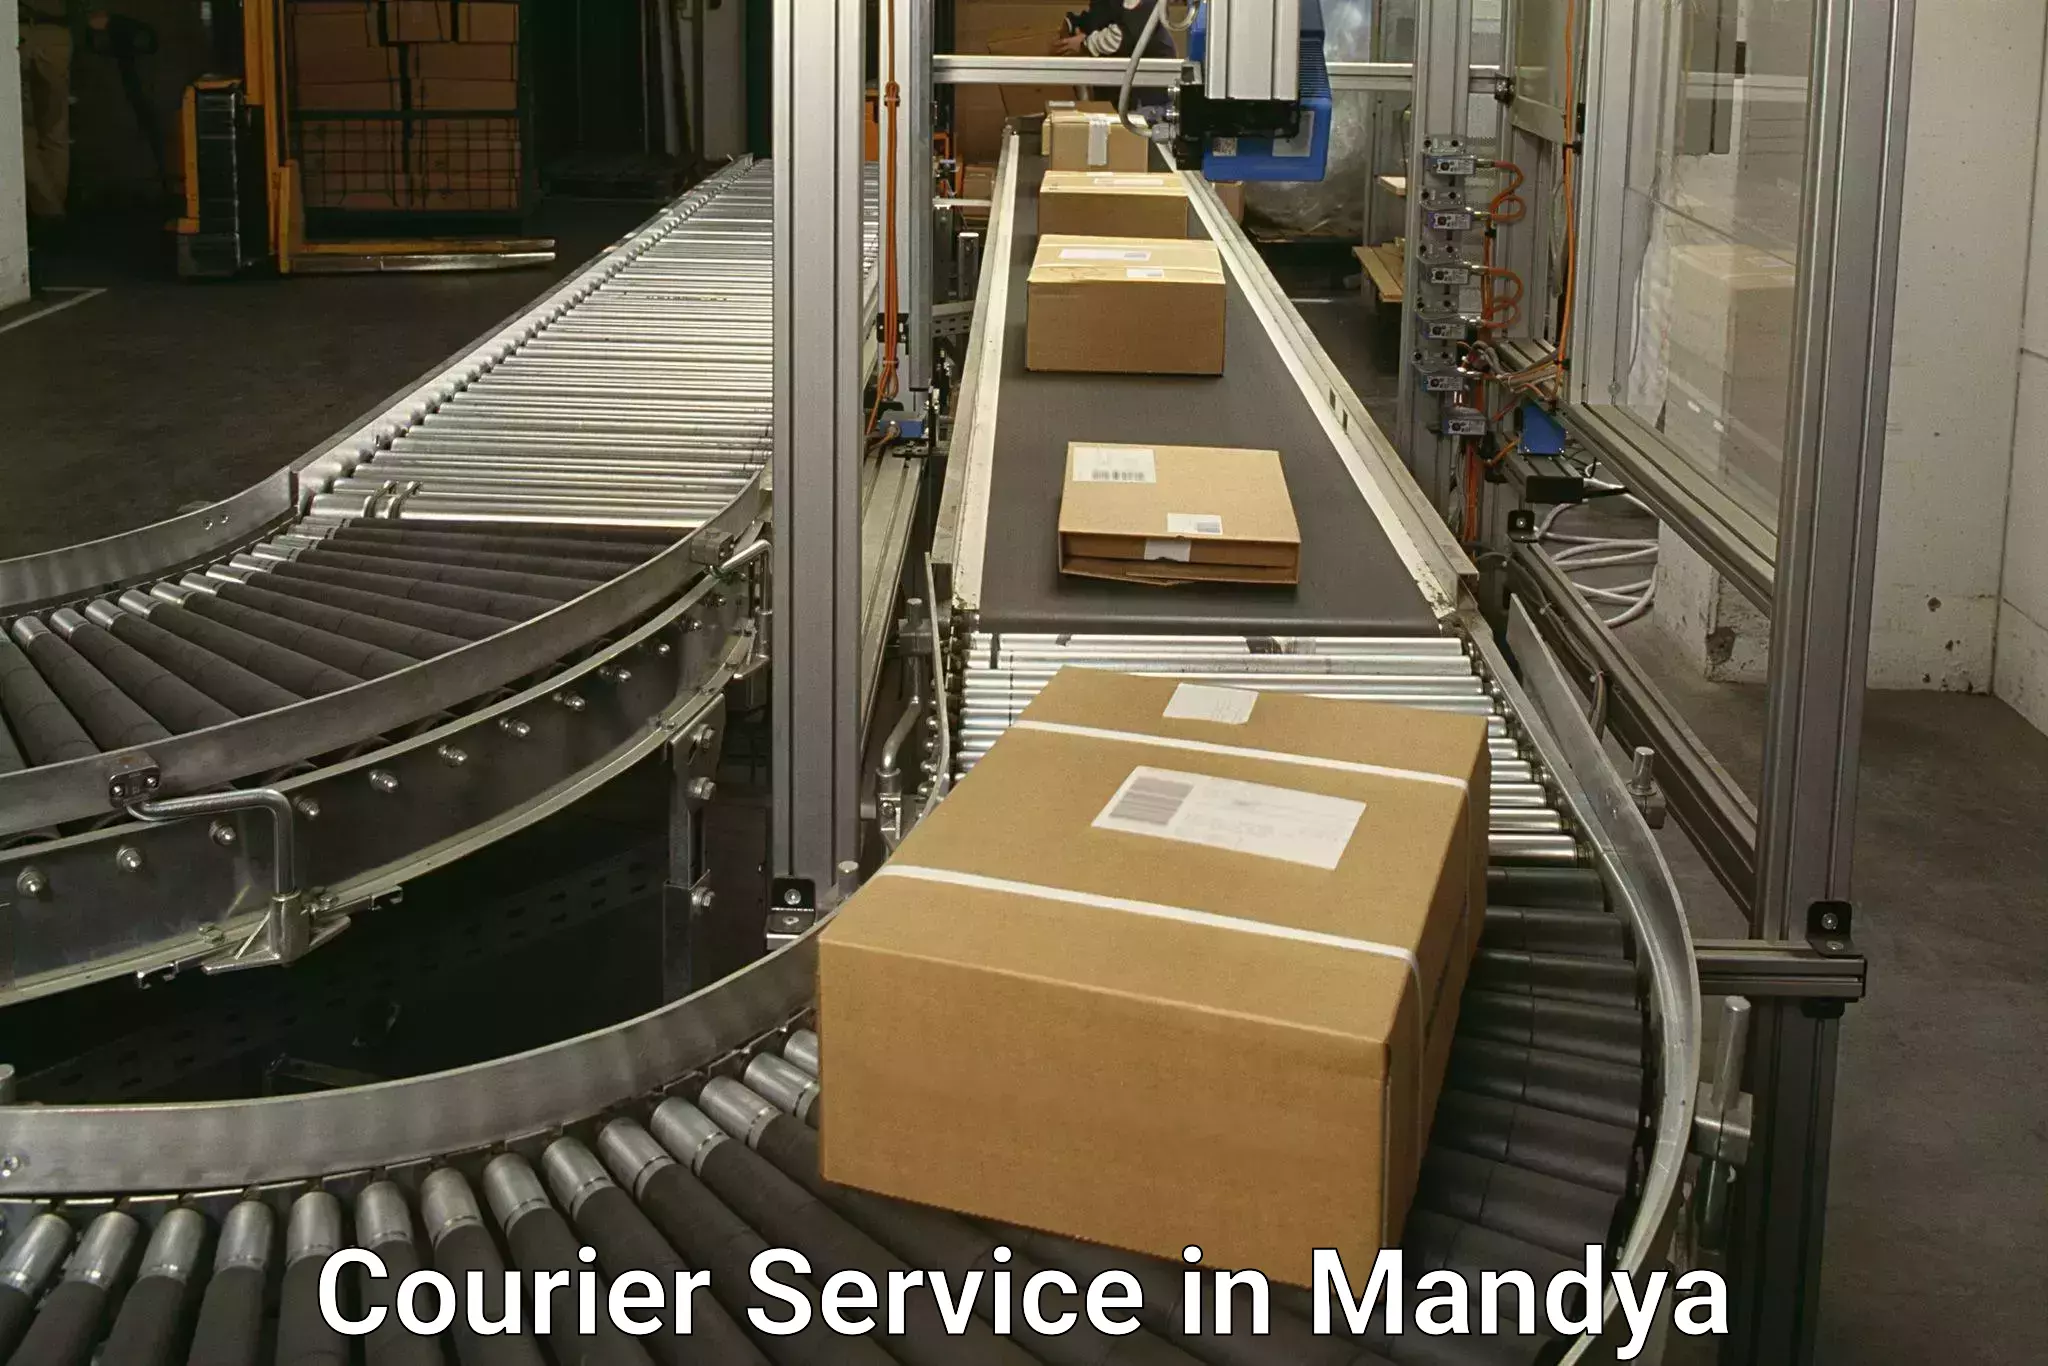 Online package tracking in Mandya